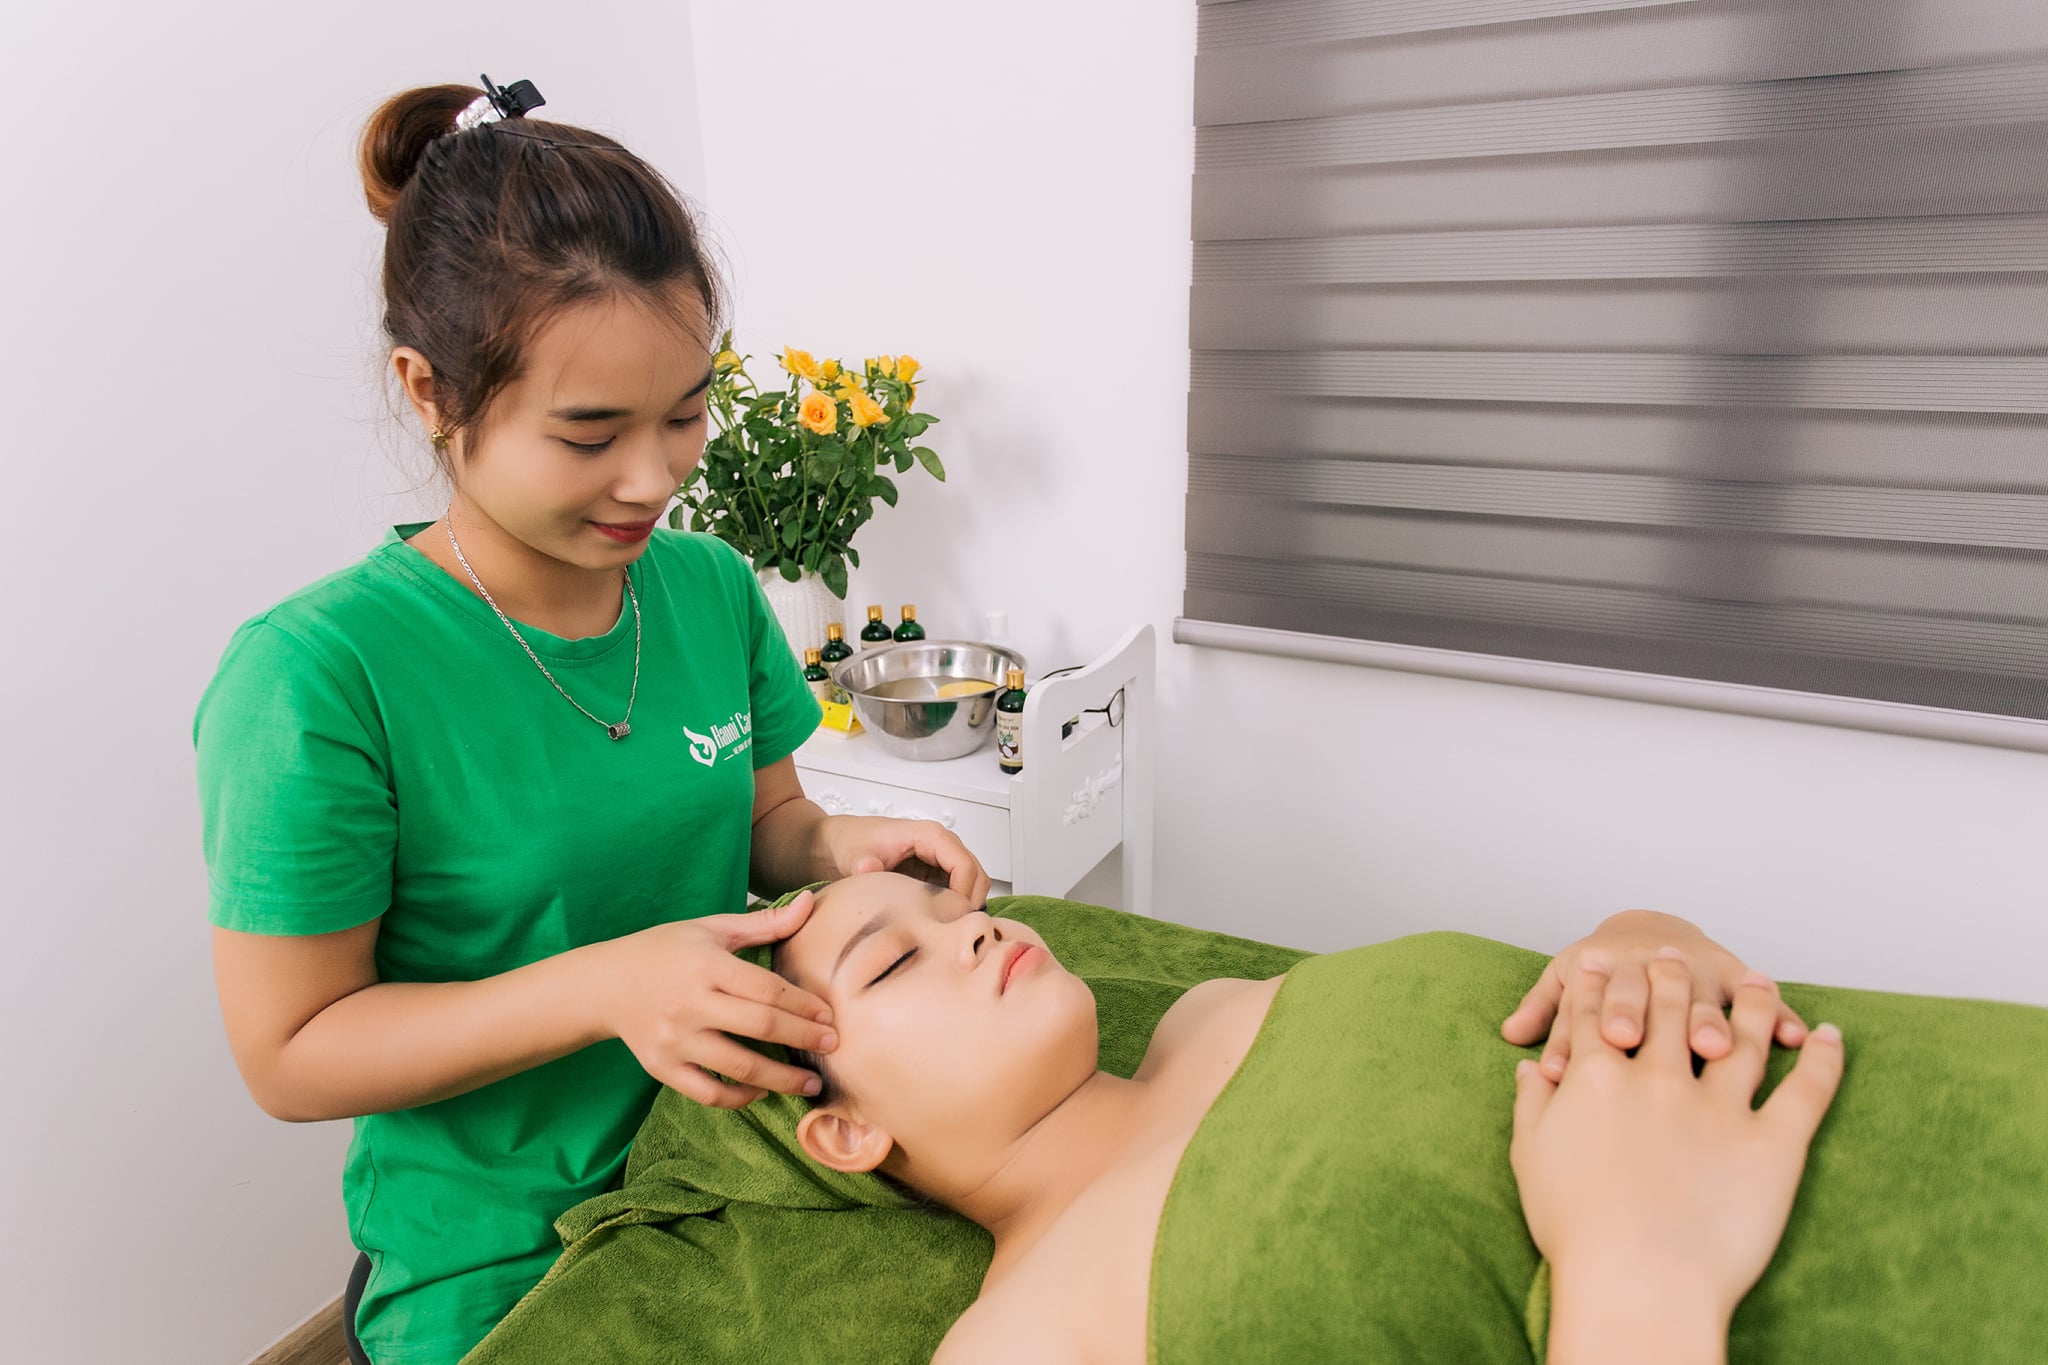 Top 7 Dịch vụ chăm sóc mẹ và bé uy tín, chất lượng nhất tại Hà Nội -  Hà Nội Care